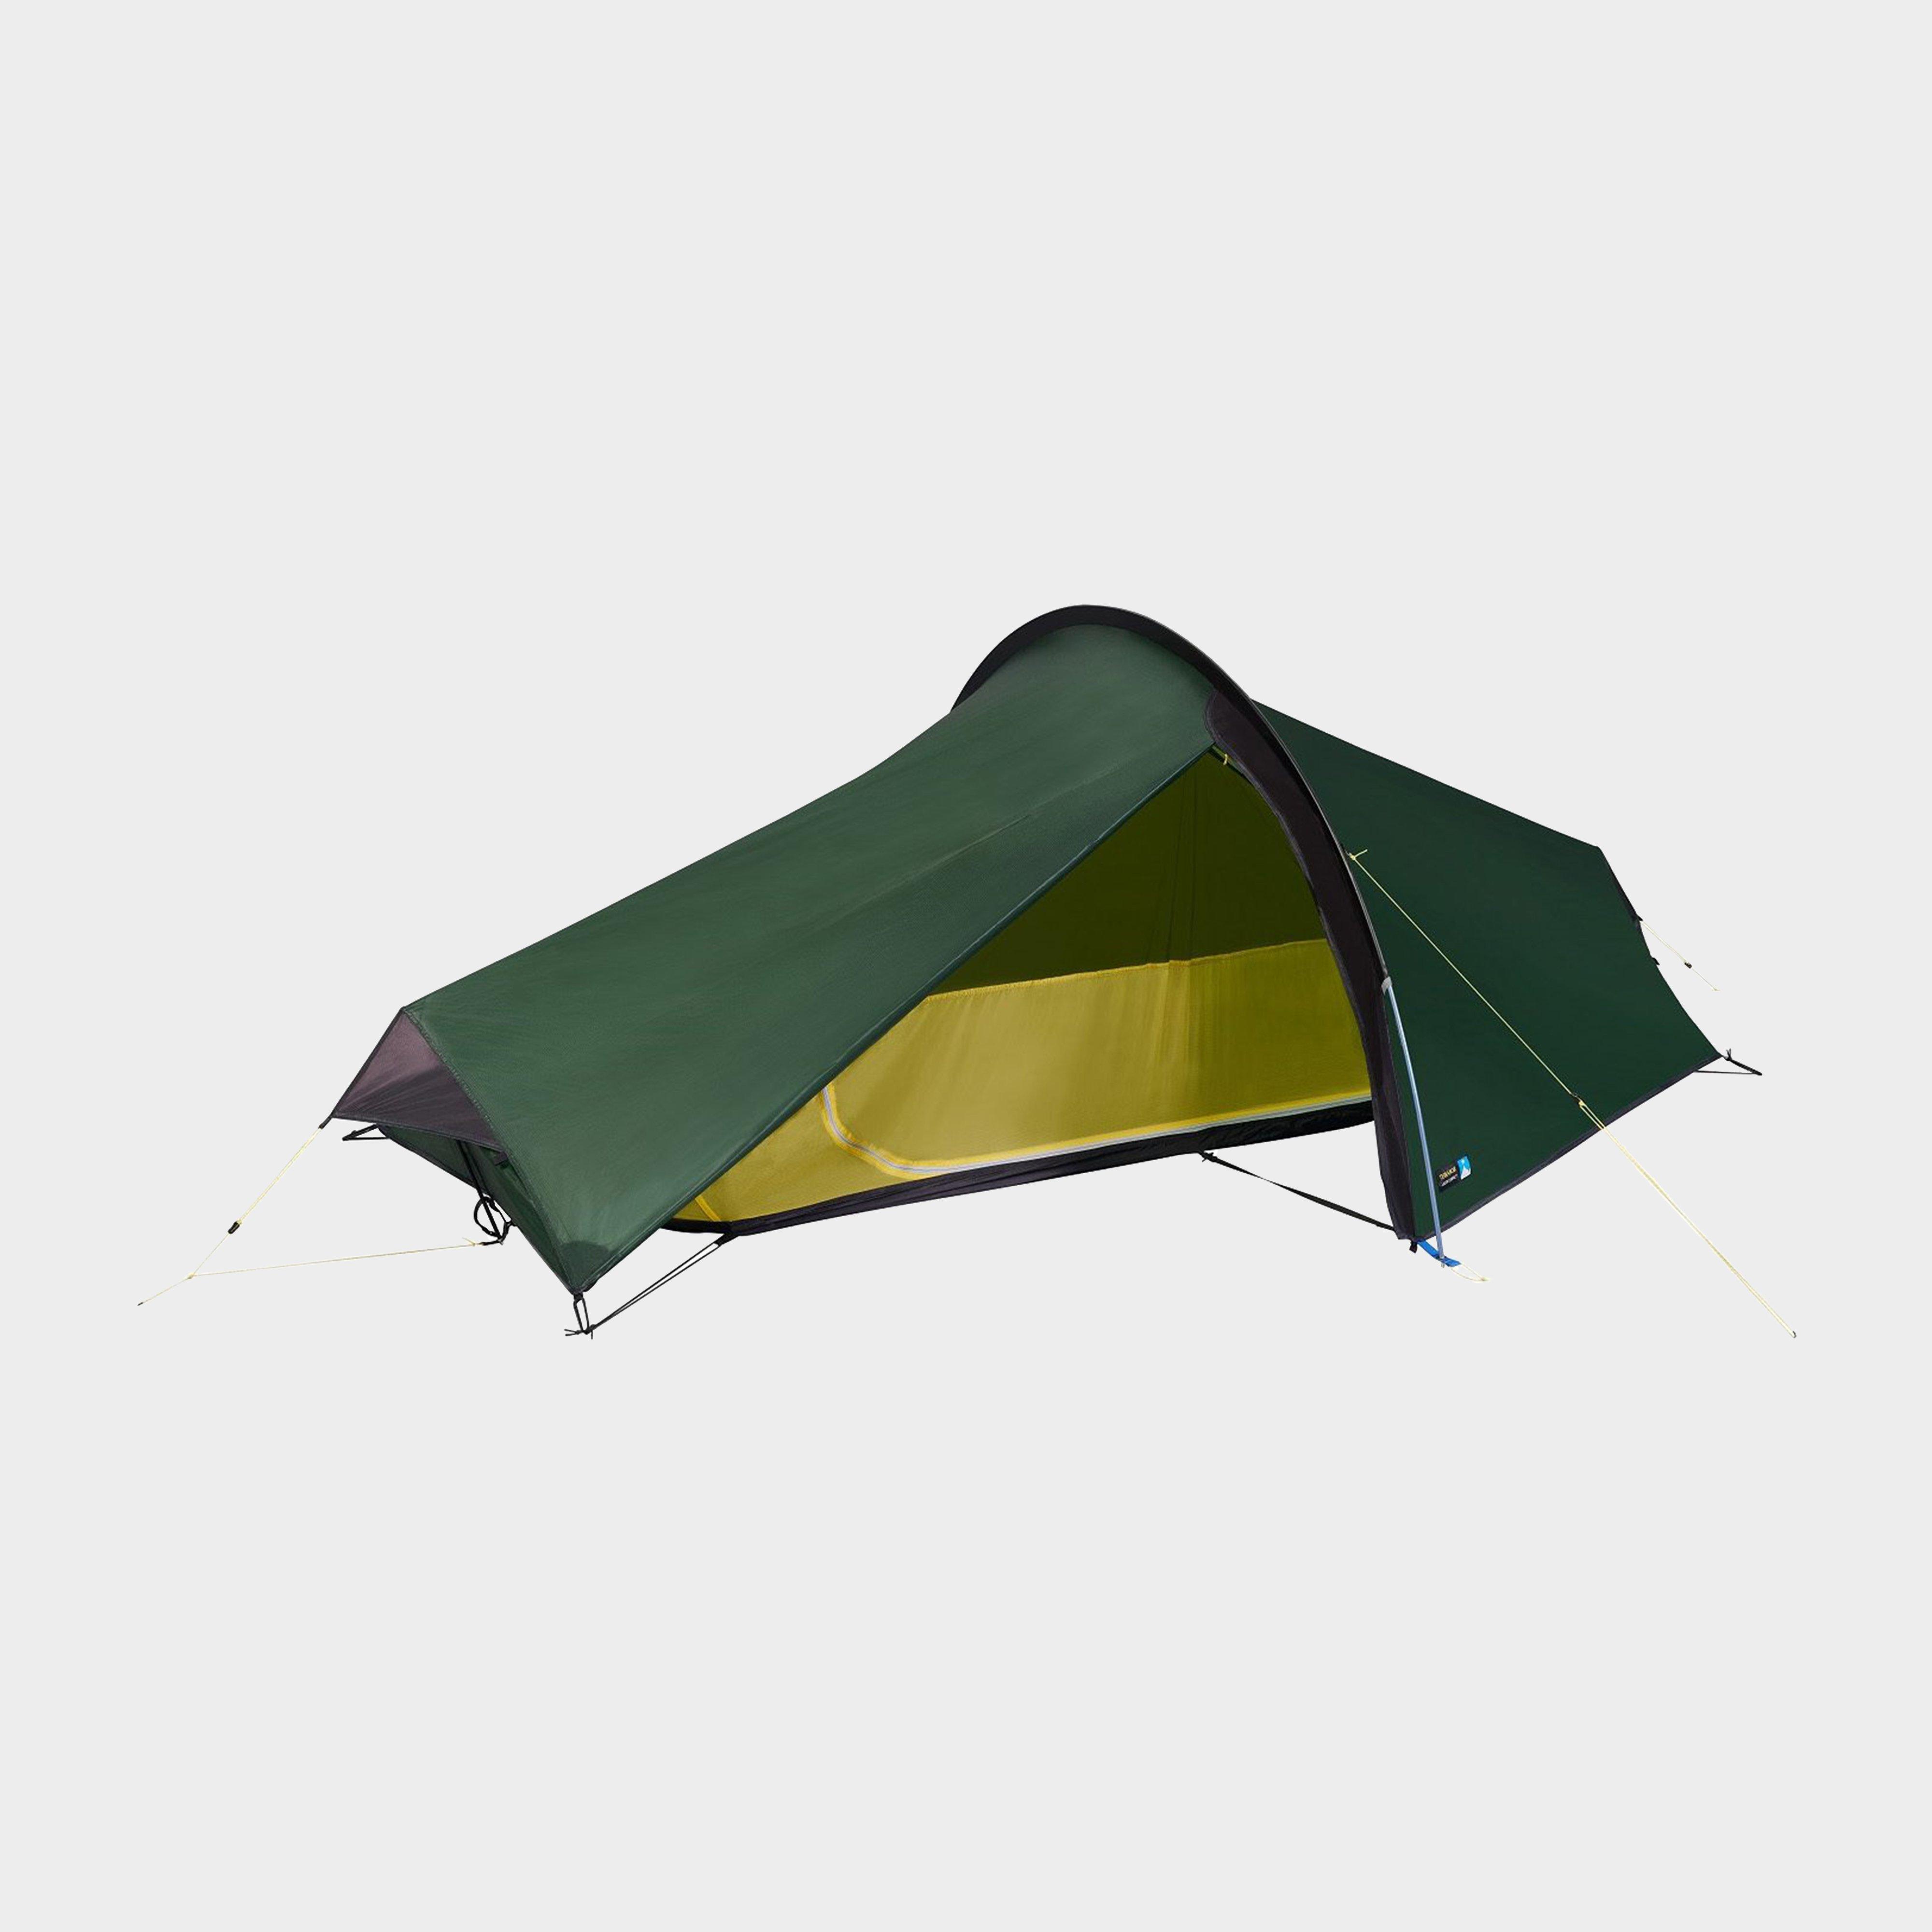 Terra Nova Laser Compact 1 Tent - Green